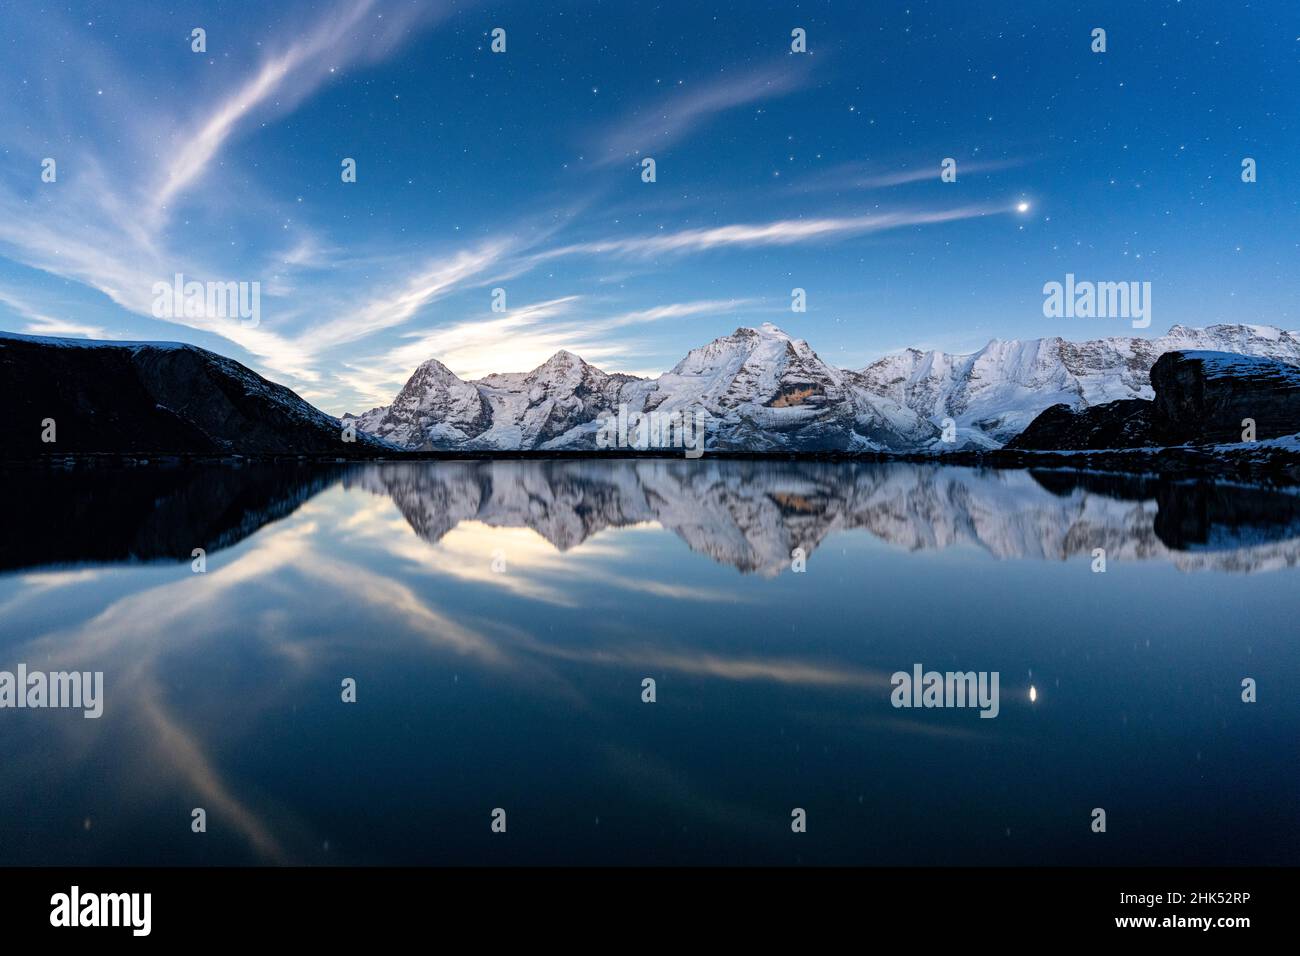 Les montagnes Eiger, Monch et Jungfrau se reflètent dans le lac Engital sous les étoiles, Murren Birg, canton de Berne, Alpes suisses, Suisse,Europe Banque D'Images